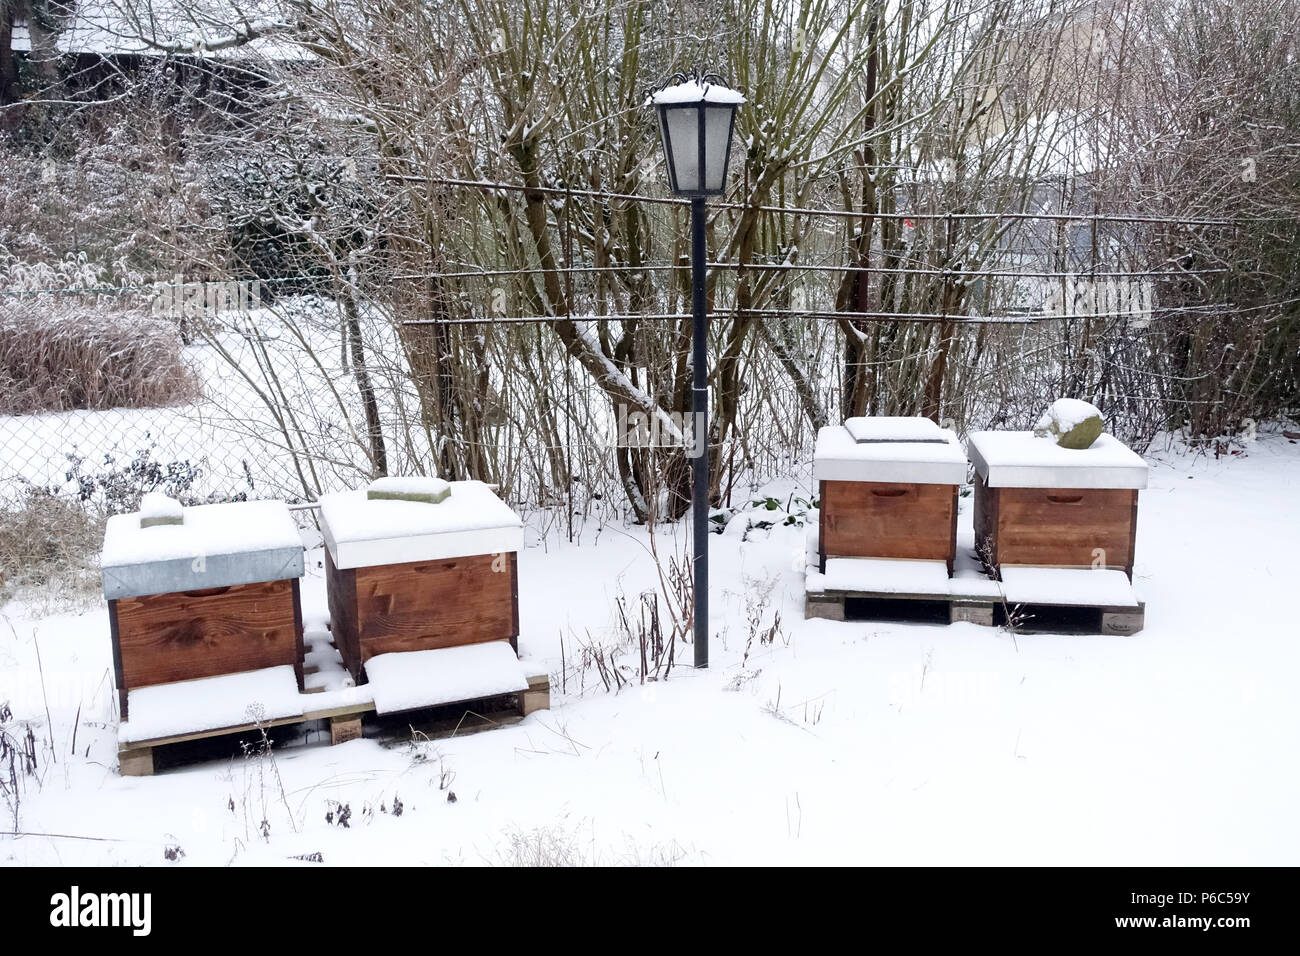 Berlin, Deutschland - Bienen jagen im Winter in einer verschneiten Garten Stockfoto